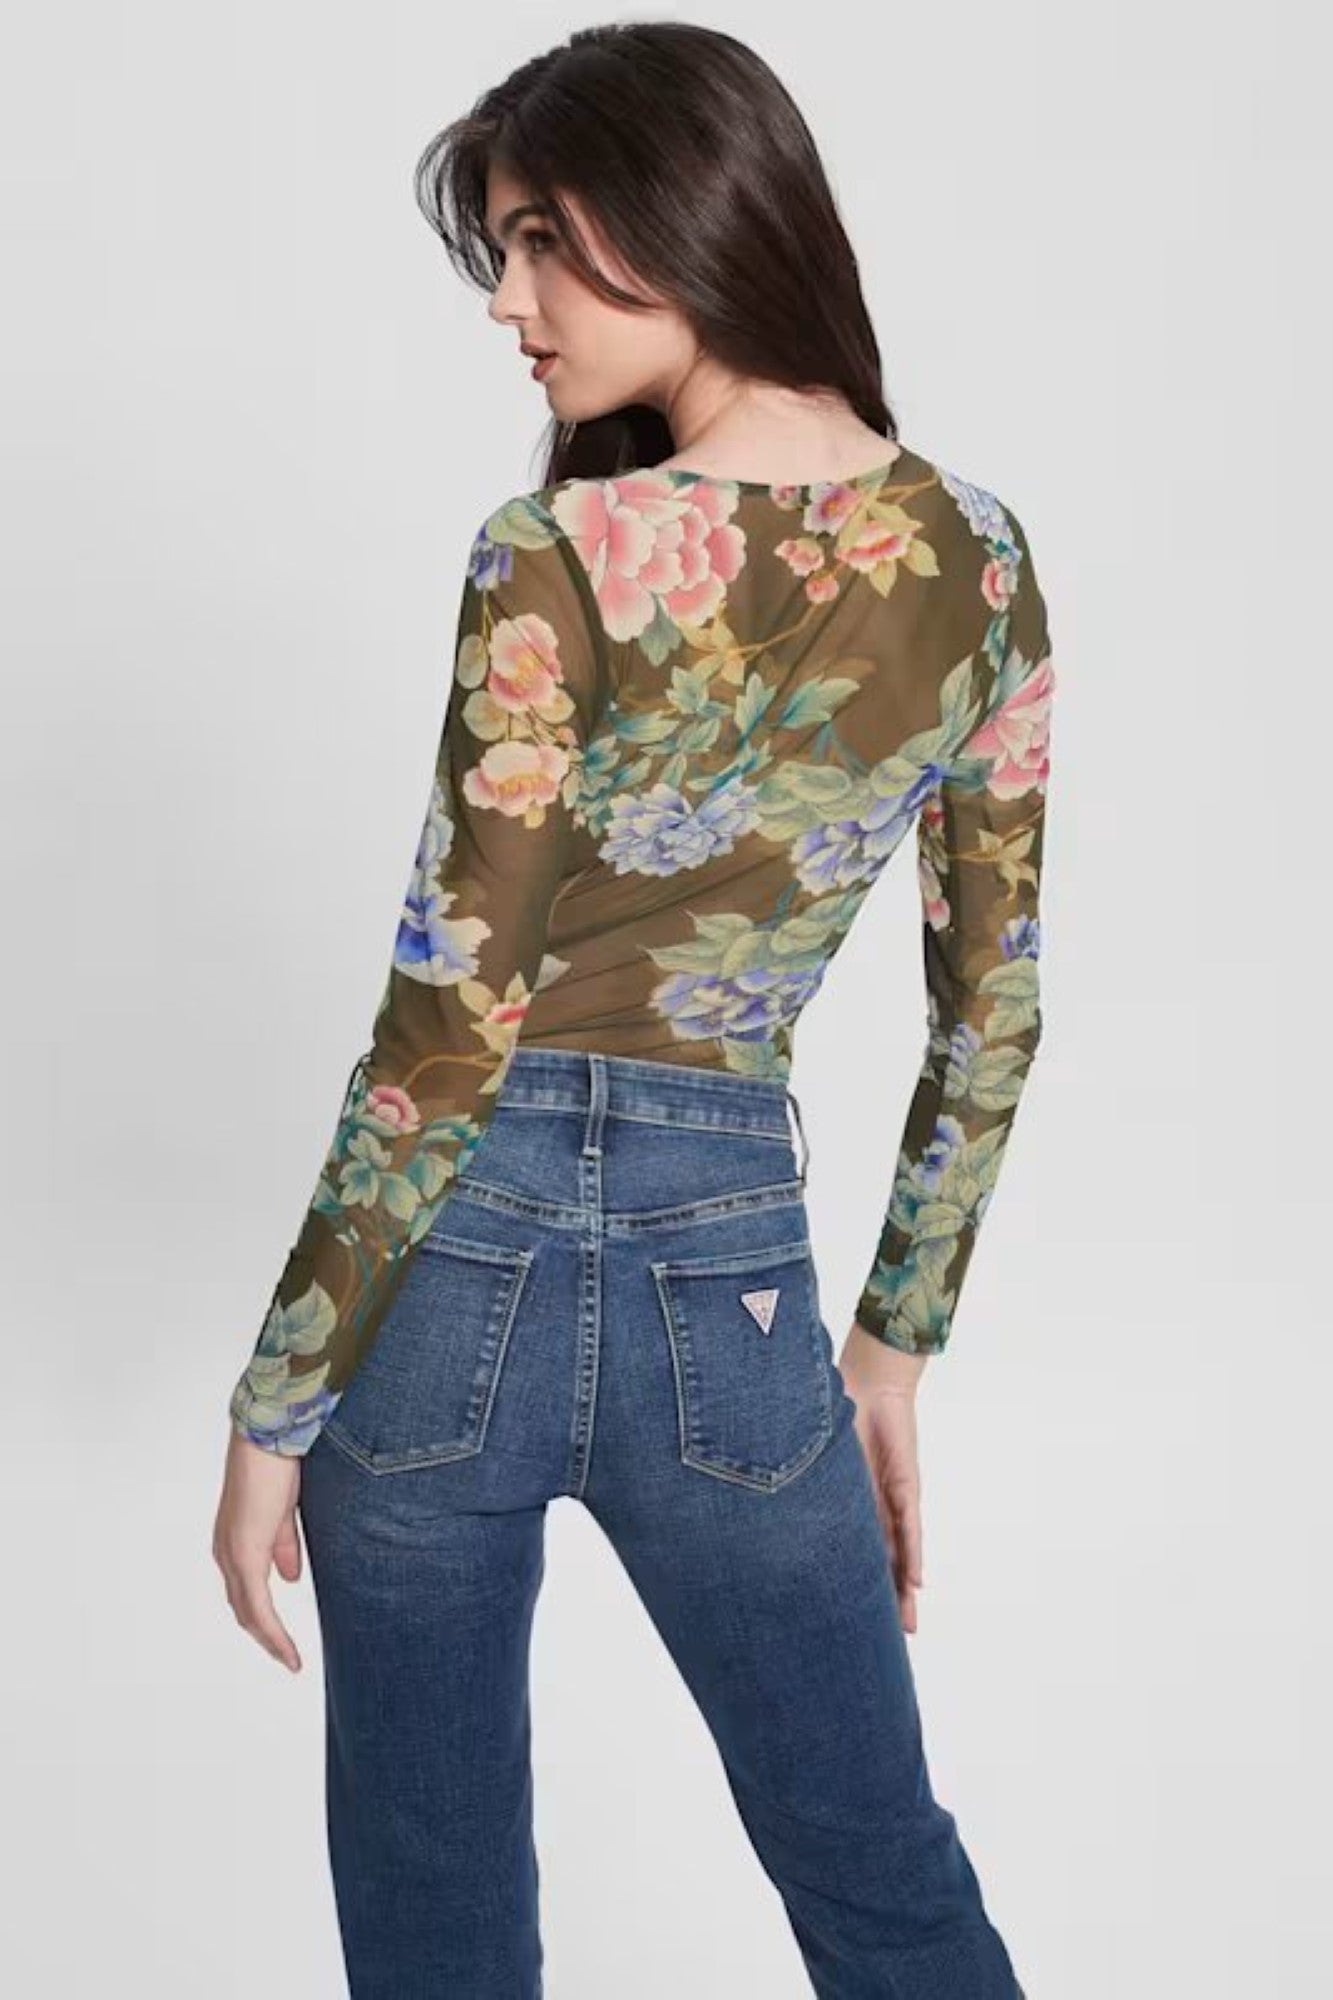 Bluza GUESS Dama Cu Maneci Lungi Usor Decoltata Si Print Floral IMBRACAMINTE GUESS   